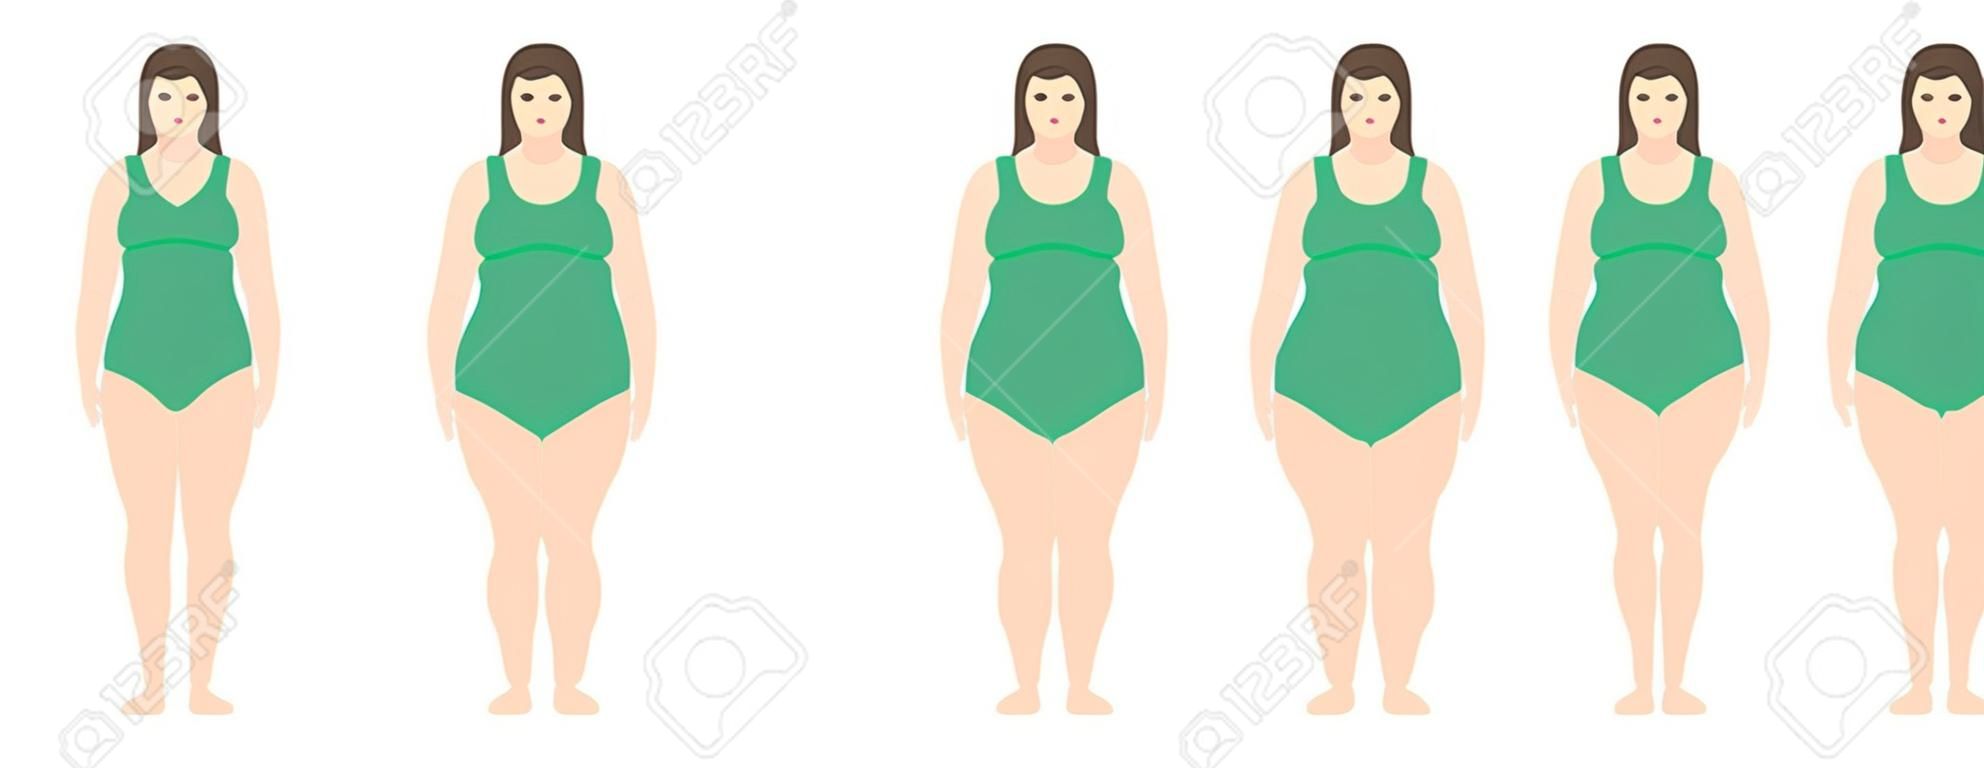 Illustration vectorielle des femmes avec un poids différent de l'anorexie à extrêmement obèse. Indice de masse corporelle, concept de perte de poids.